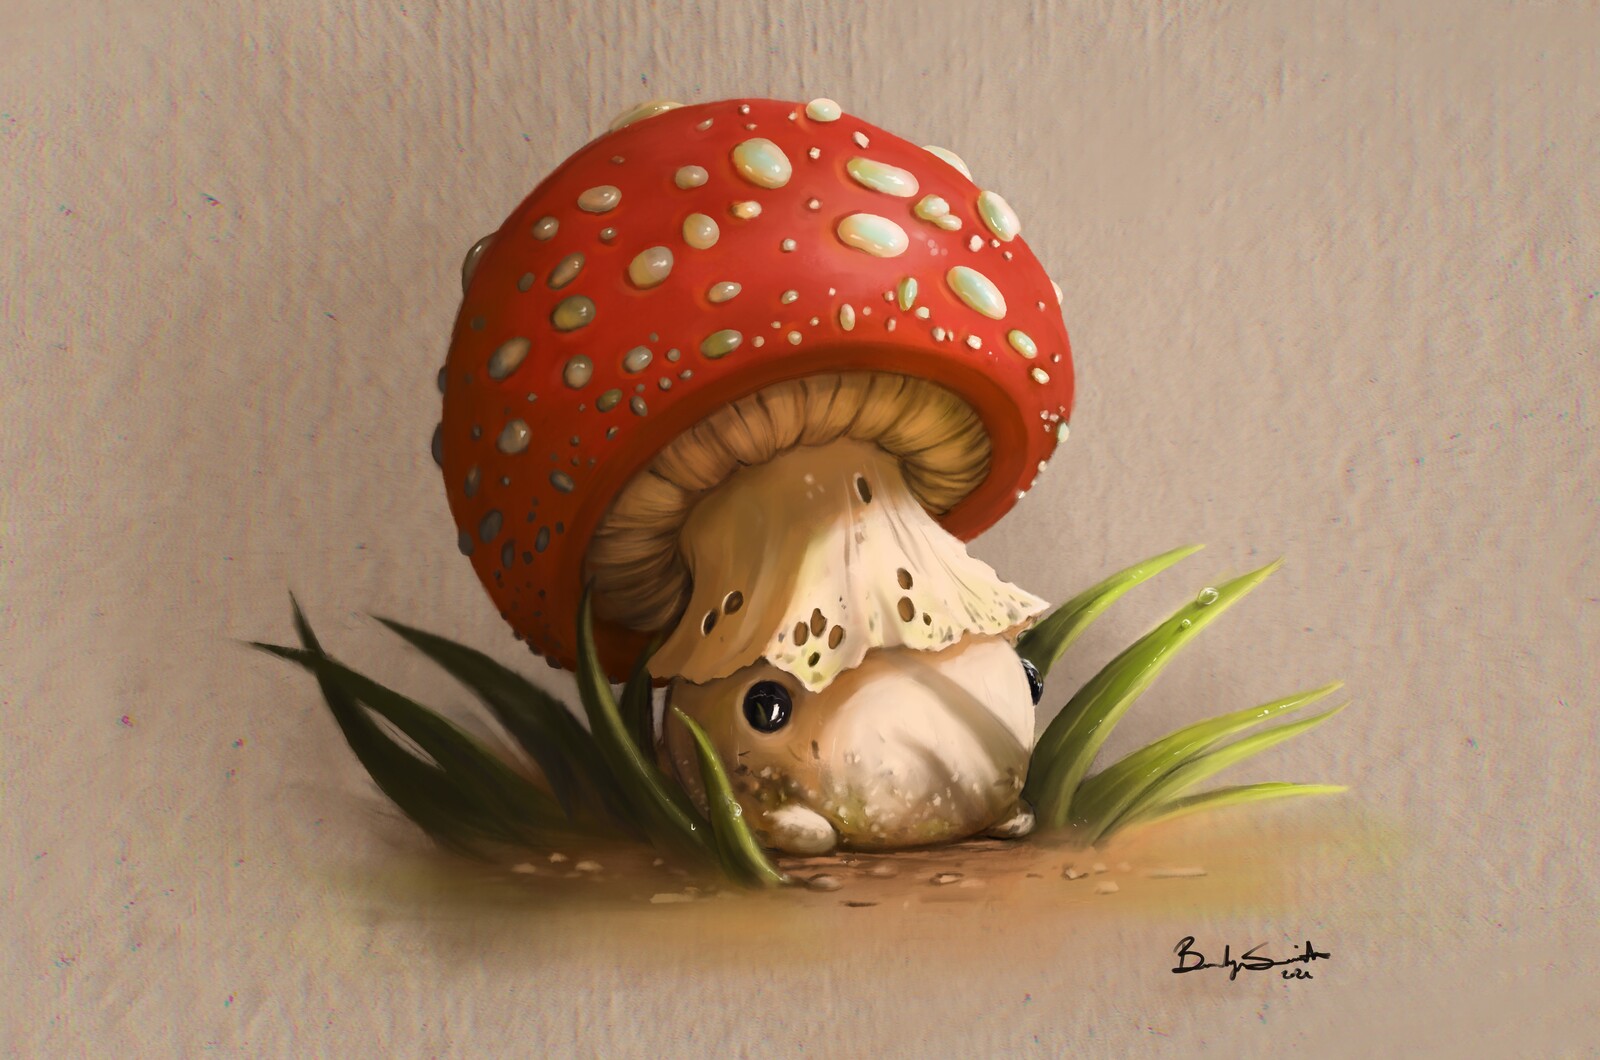 Mushroom creature